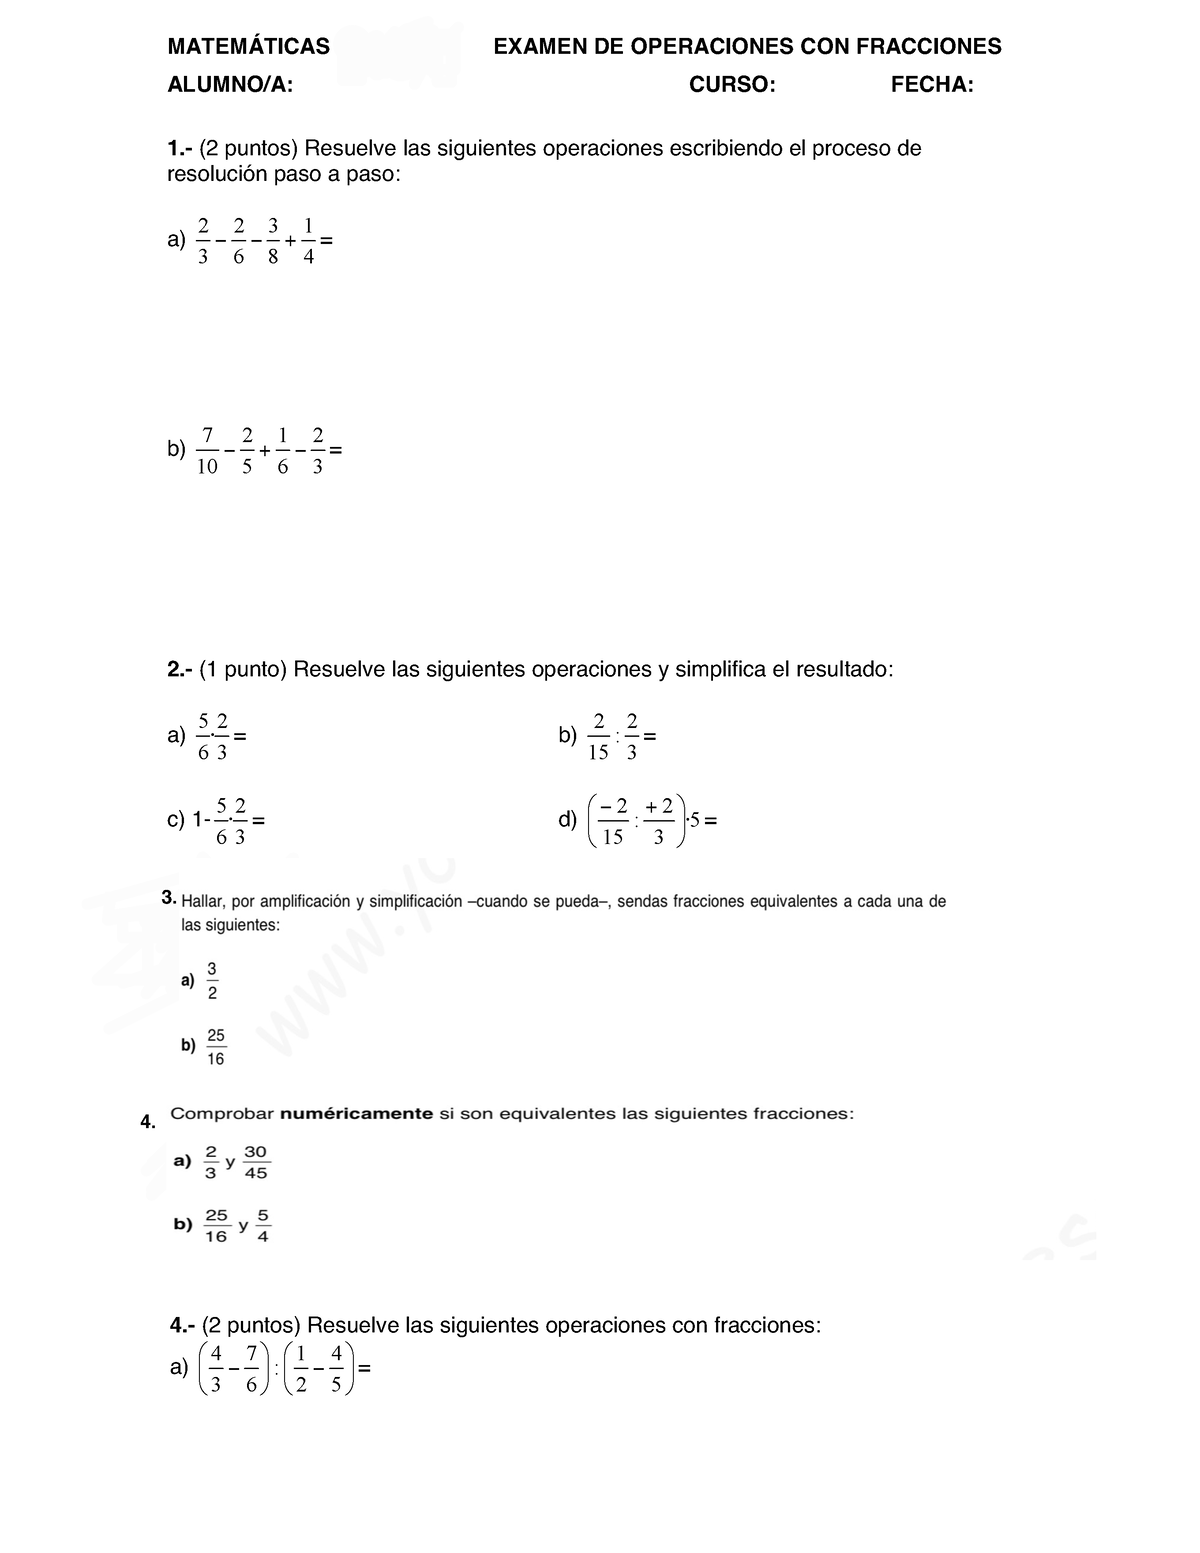 Examen Fracciones MatemÁticas De 2º Es Examen De Operaciones Con Fracciones Alumnoa Curso 6188